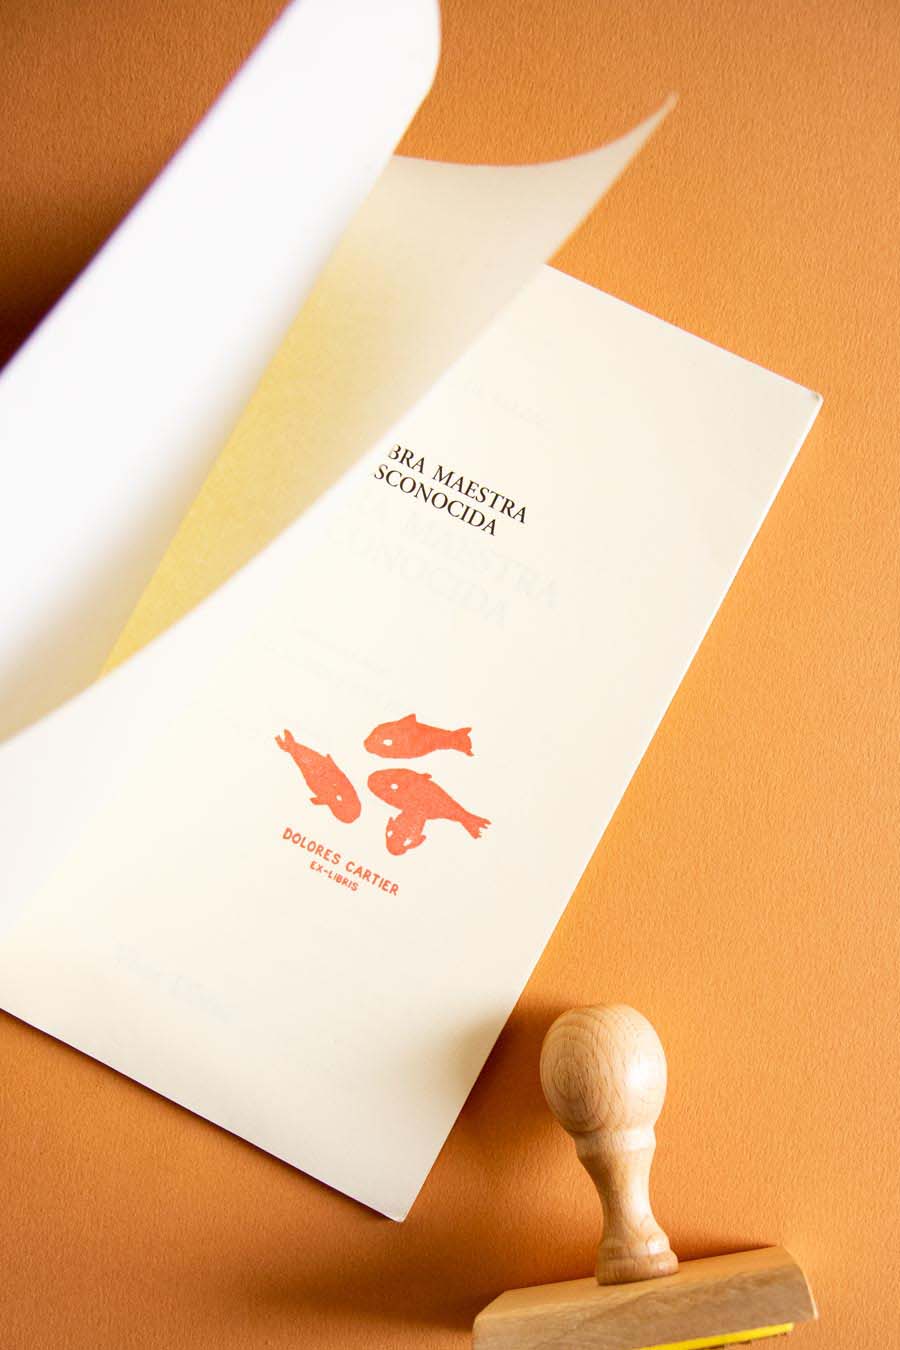 Portadilla de libro estampada con un sello exlibris de peces